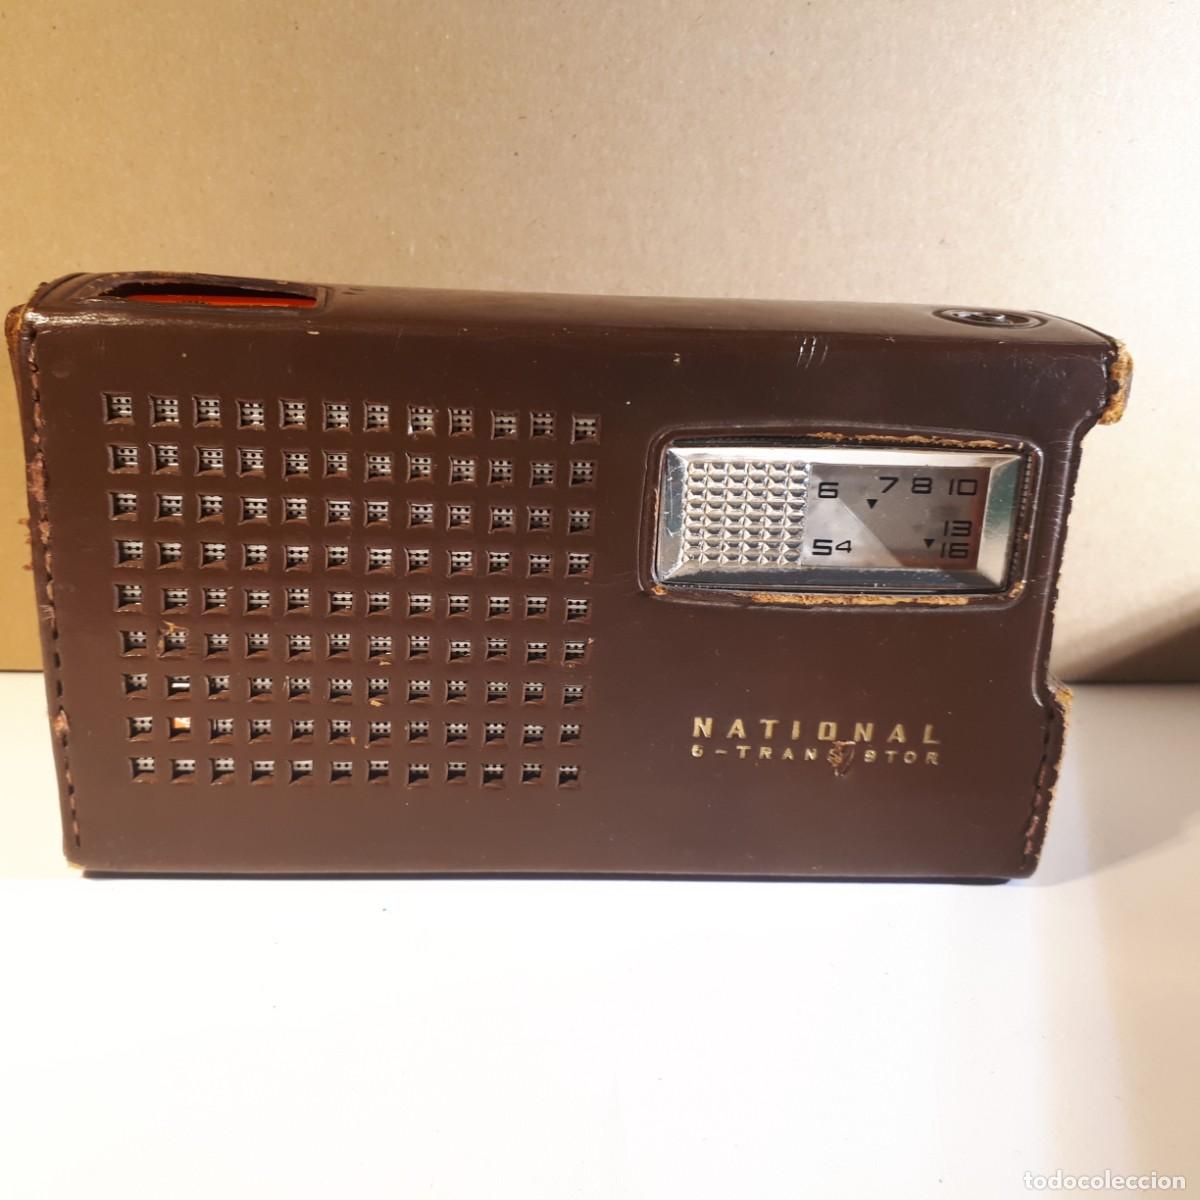 radio transistor portatil lavis 420 - Compra venta en todocoleccion